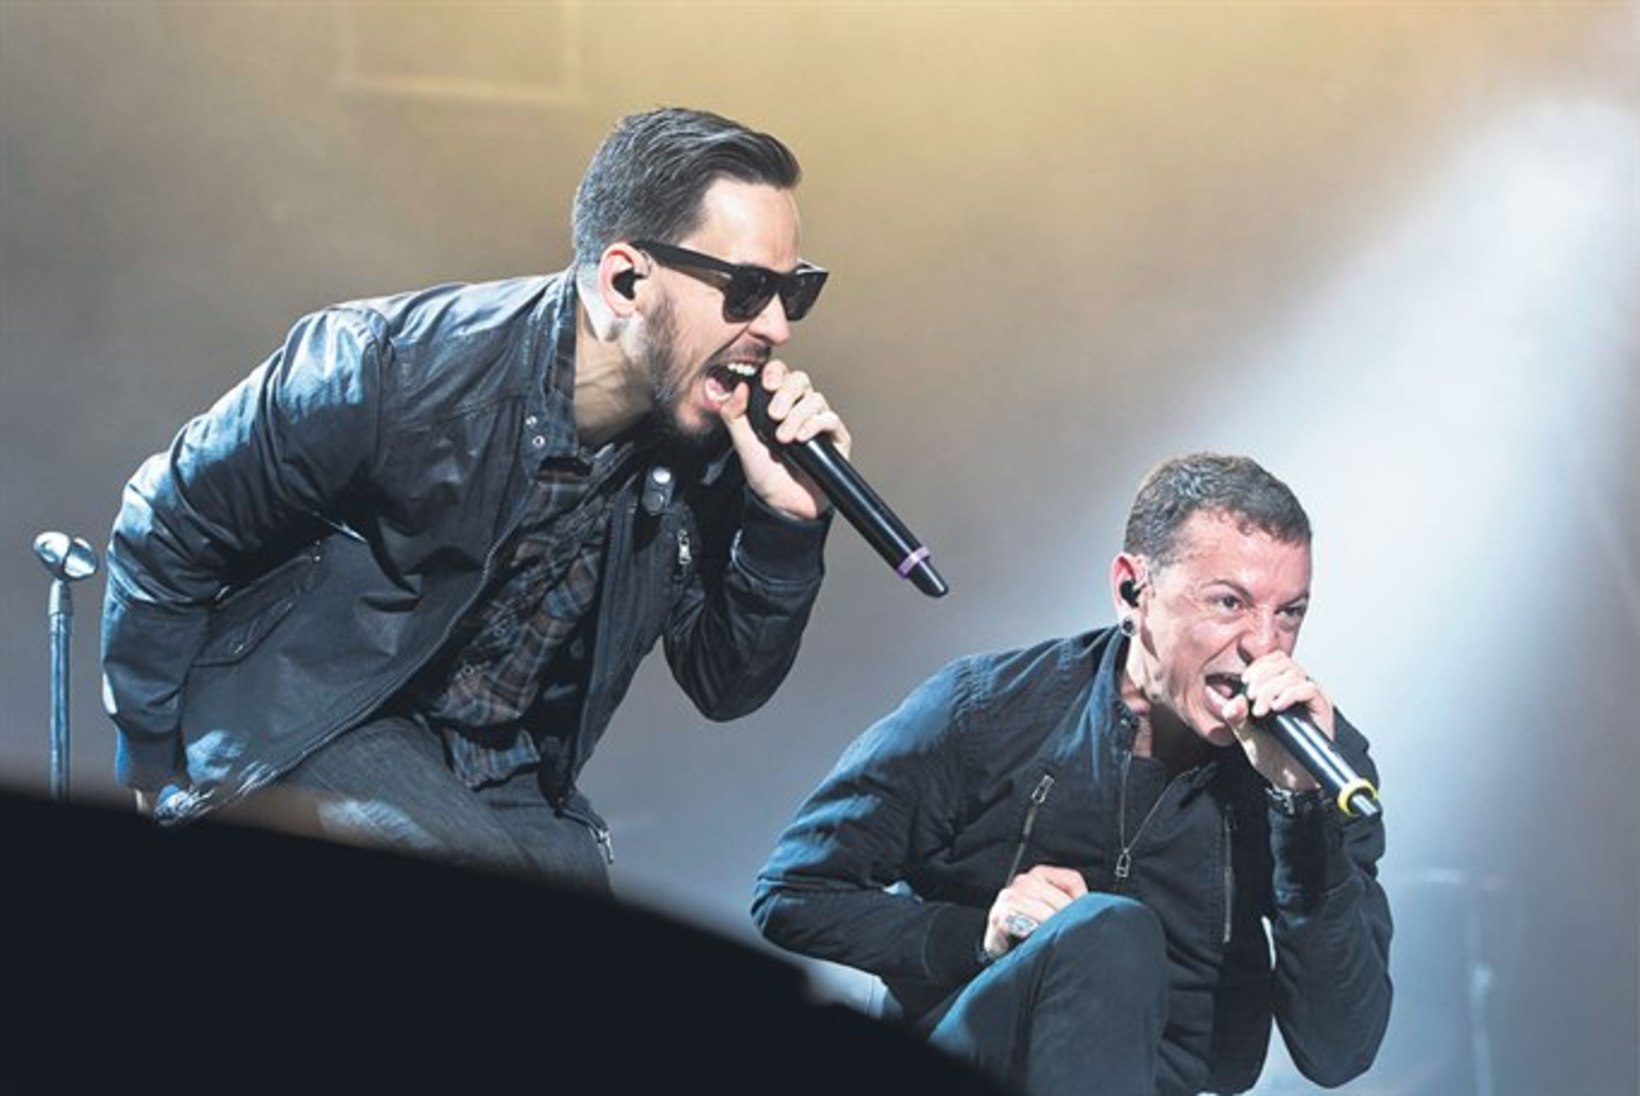 Kas 10 000 kontserdilunijat suudaks Linkin Parki Eestisse meelitada?